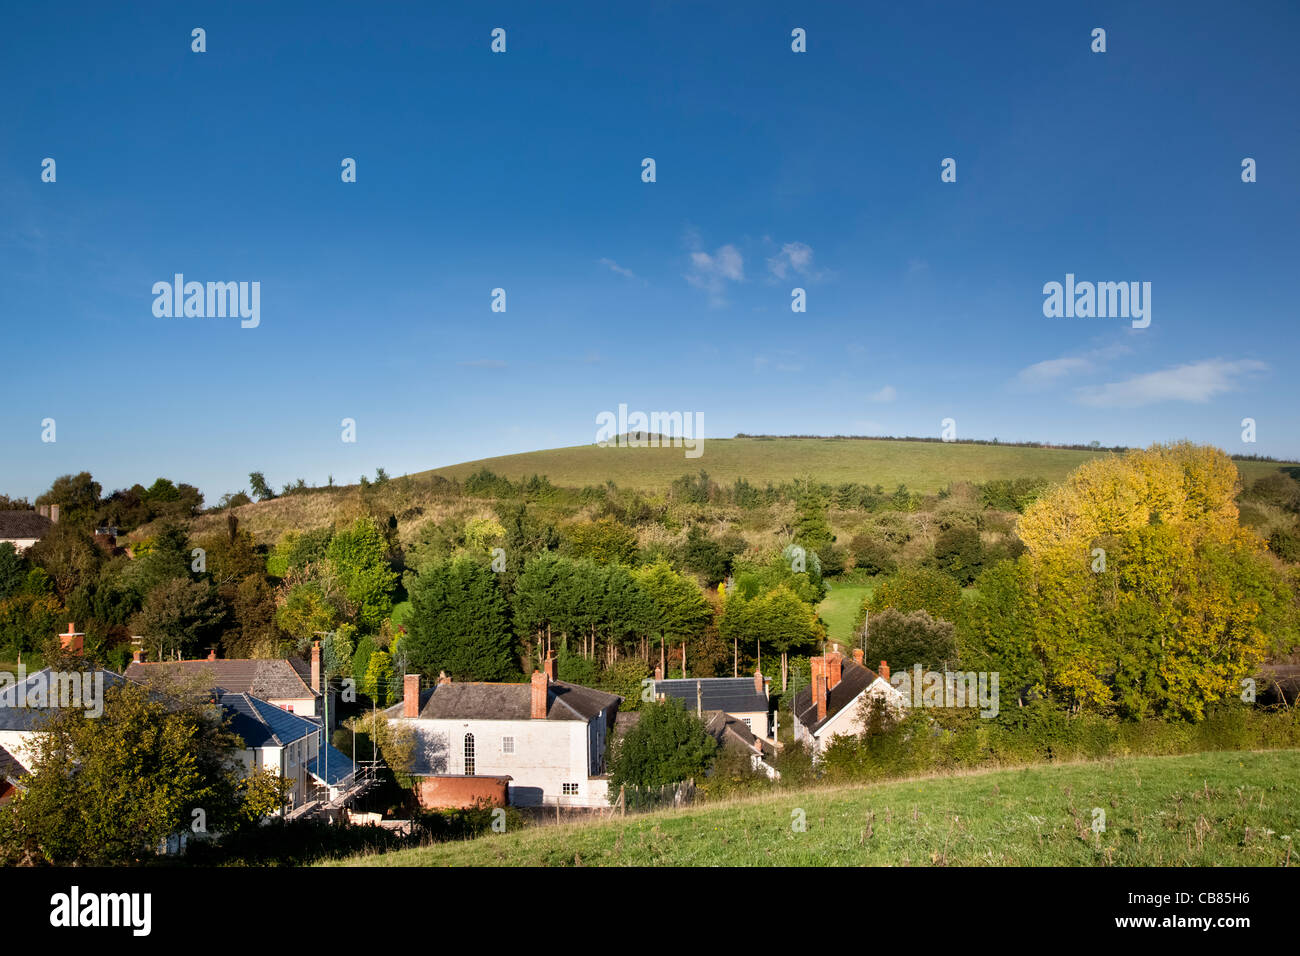 Downes Head grüne Wiese, die Baugenehmigung für eine Wohnsiedlung, Crediton, Devon, England Stockfoto